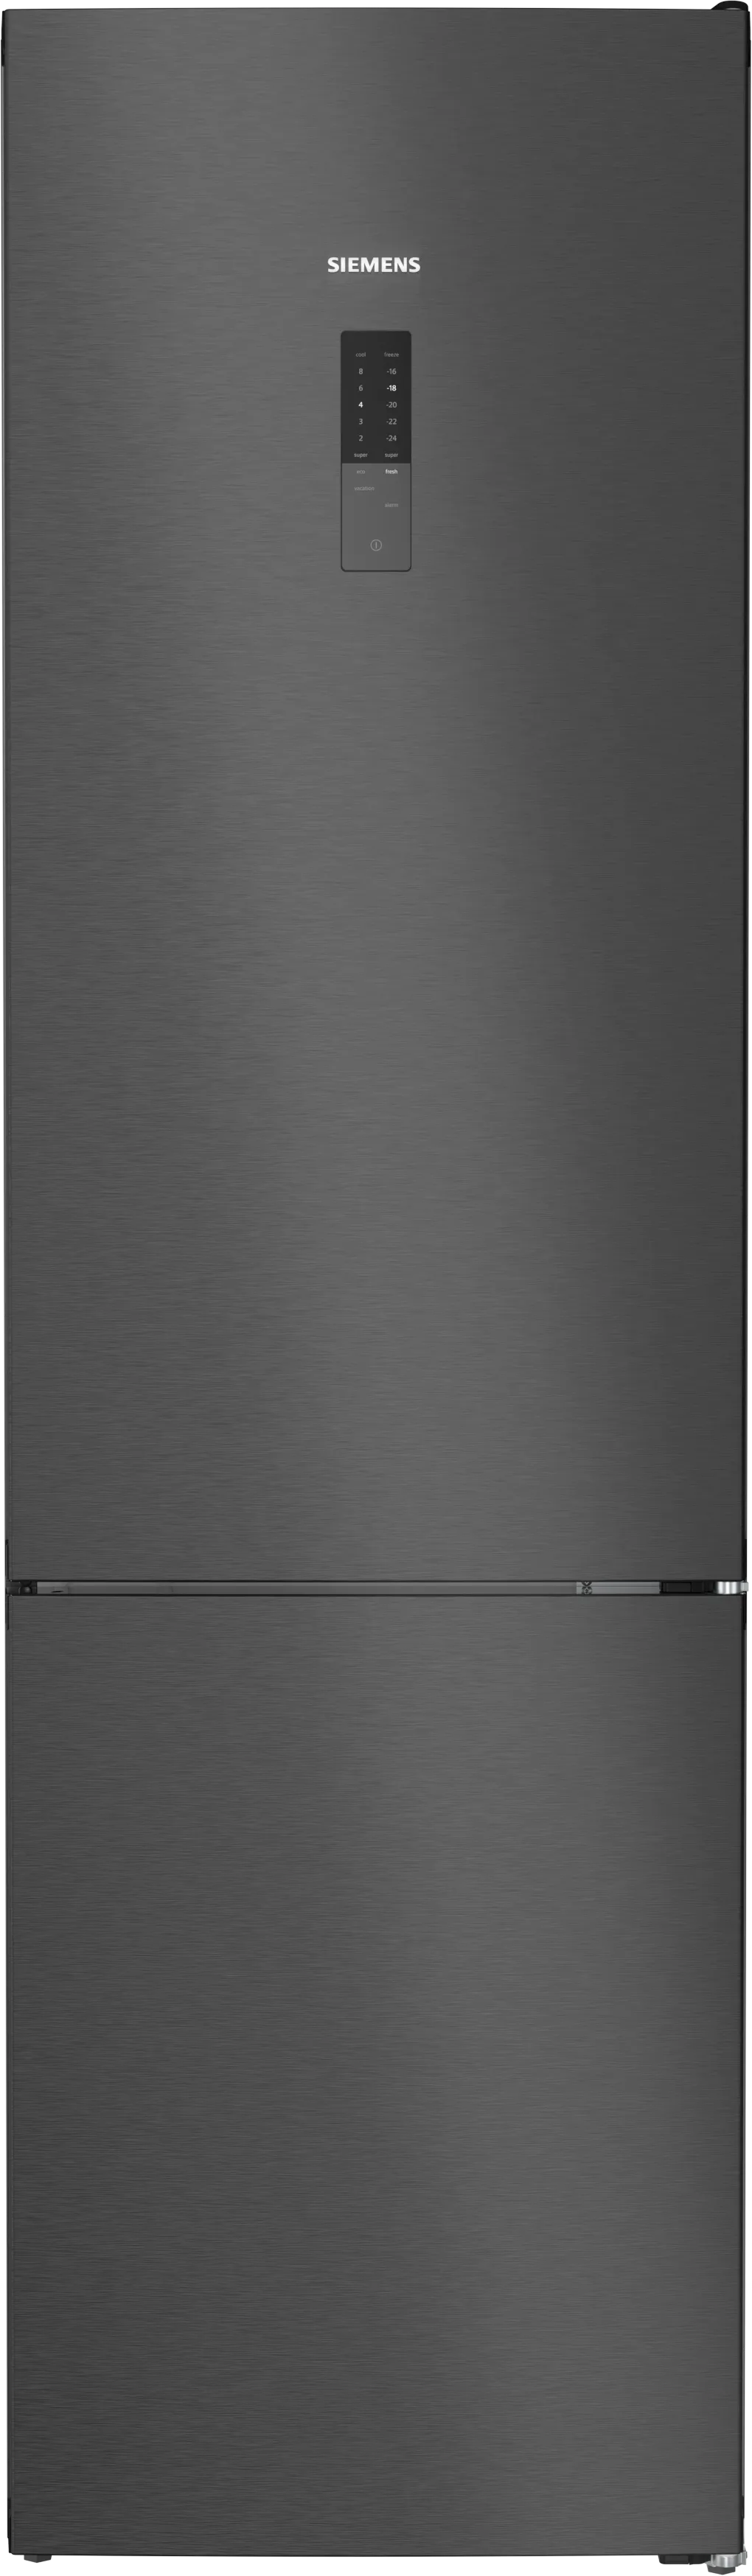 iQ300 Freistehende Kühl-Gefrier-Kombination mit Gefrierbereich unten 203 x 60 cm BlackSteel 